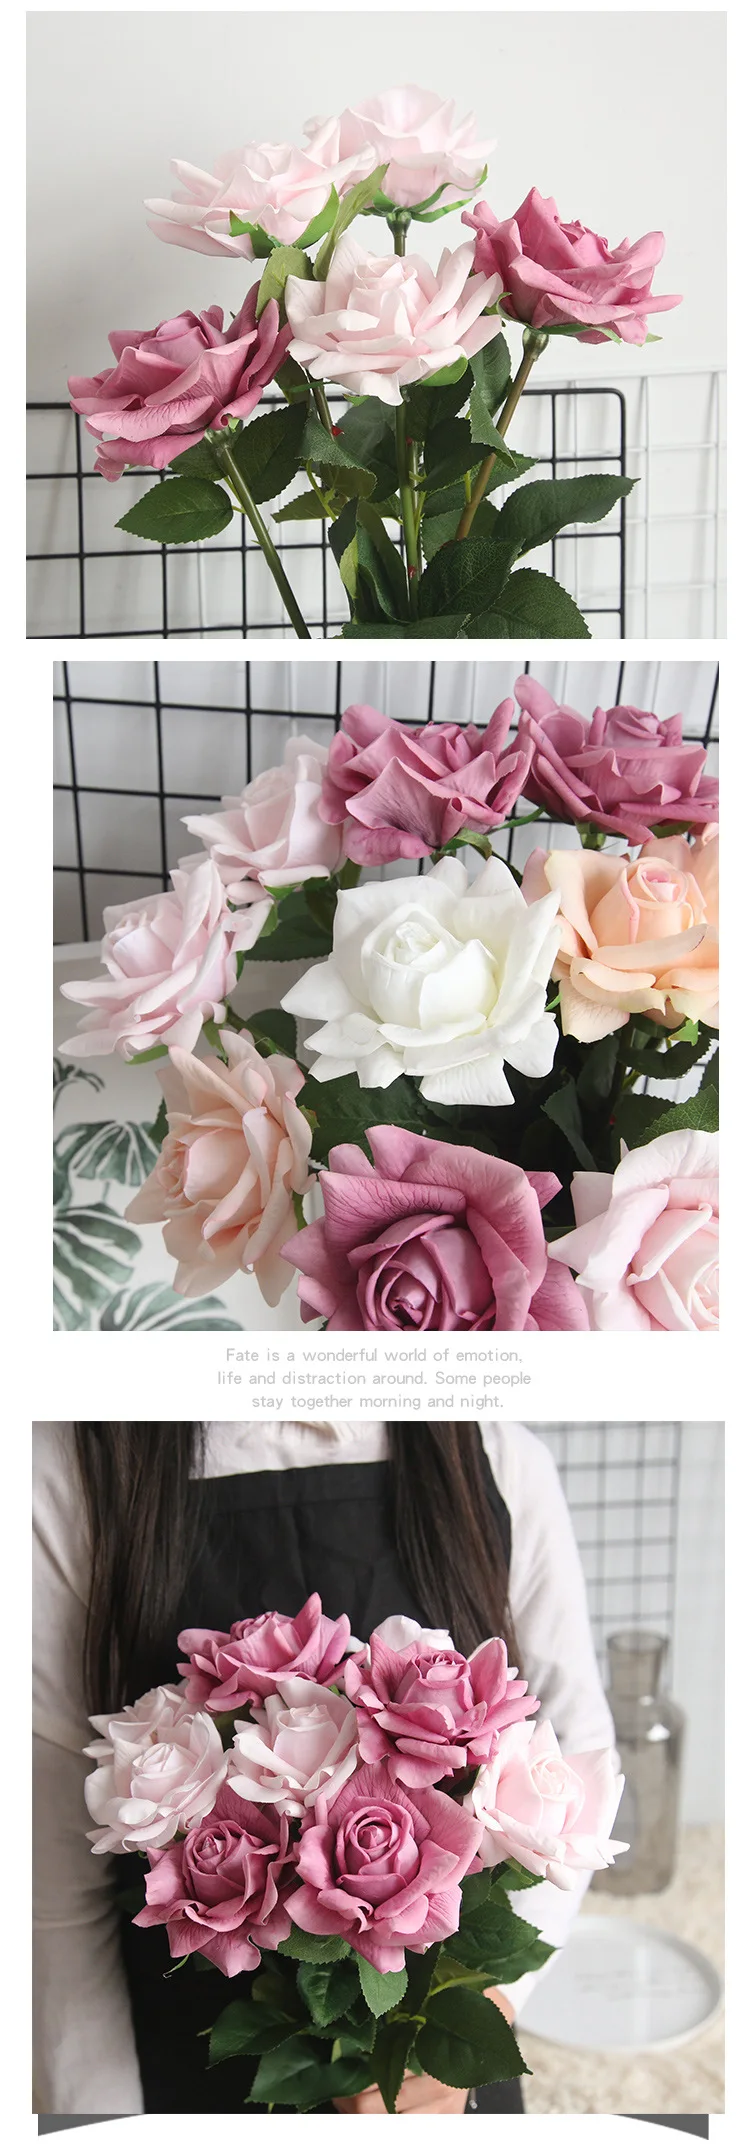 2 шт. 71 см большой цветок-голова настоящий сенсорный латексный одиночный филиал Парижа Солнечный свет Роза ручной фетр моделирование для домашние украшения для свадьбы искусственные, Силиконовые розы цветы букет невесты держа цветок